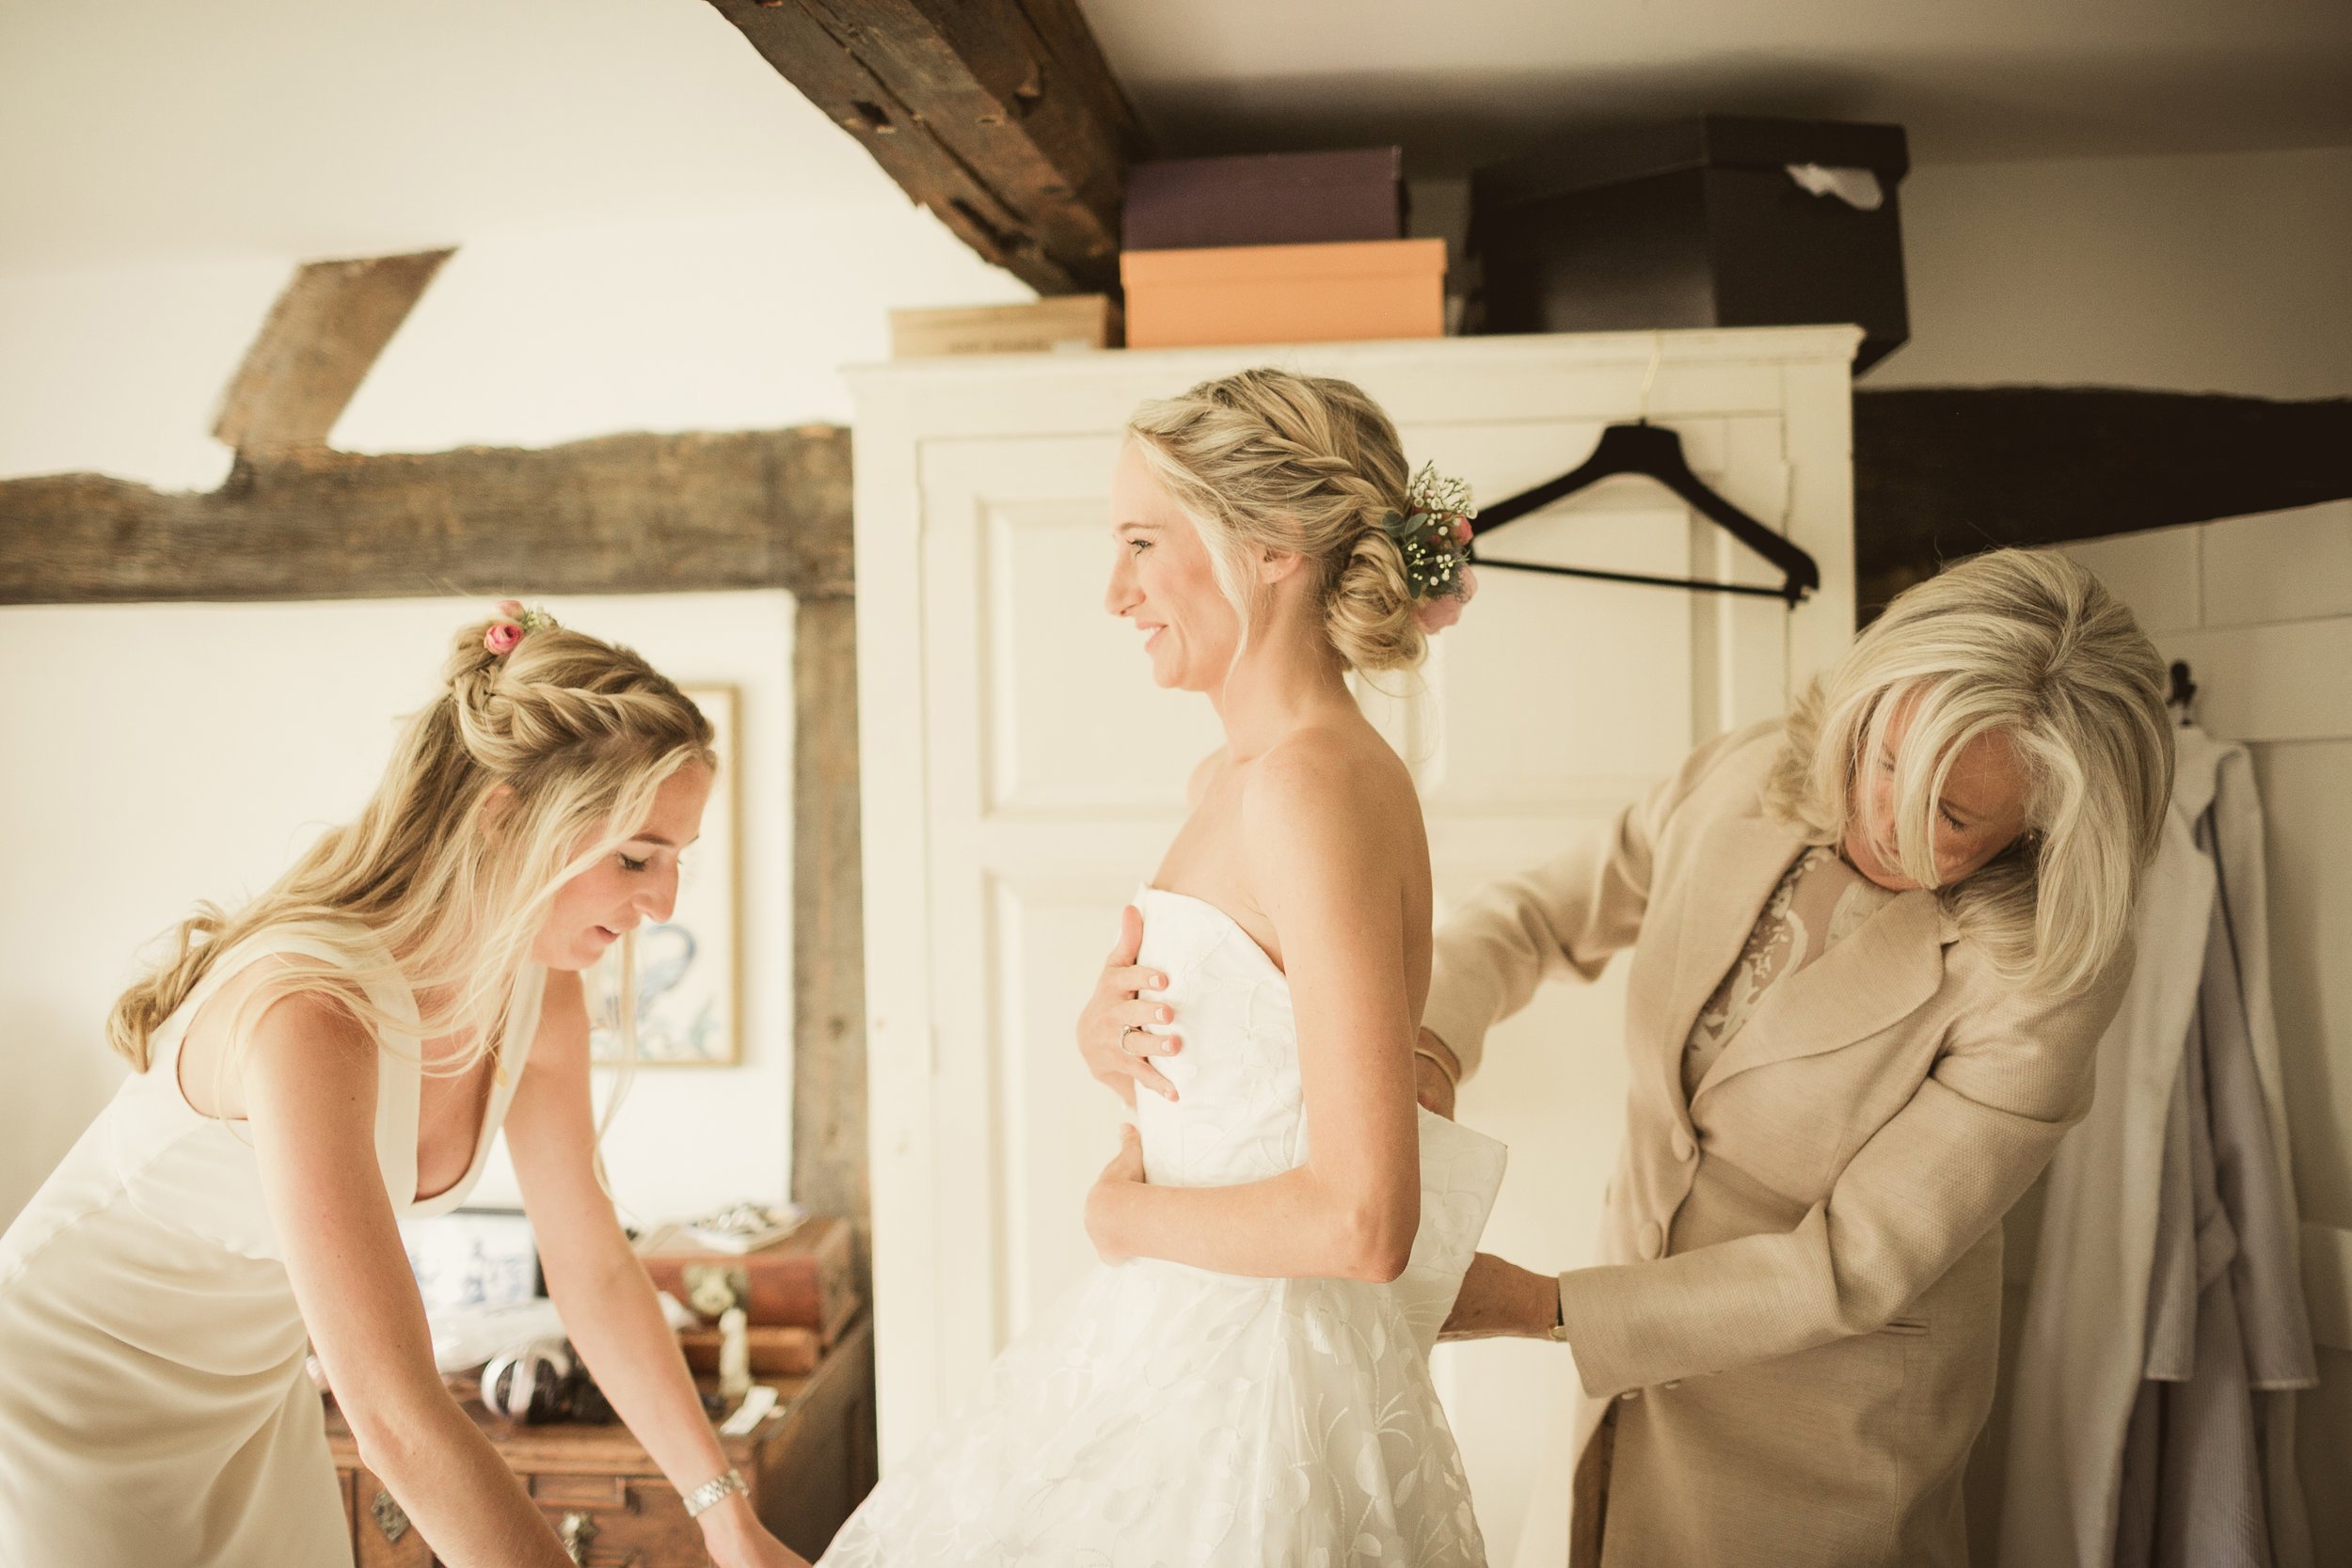 Beautiful+bride+Lucy+wears+a+wedding+dress+by+Halfpenny+London1.jpeg